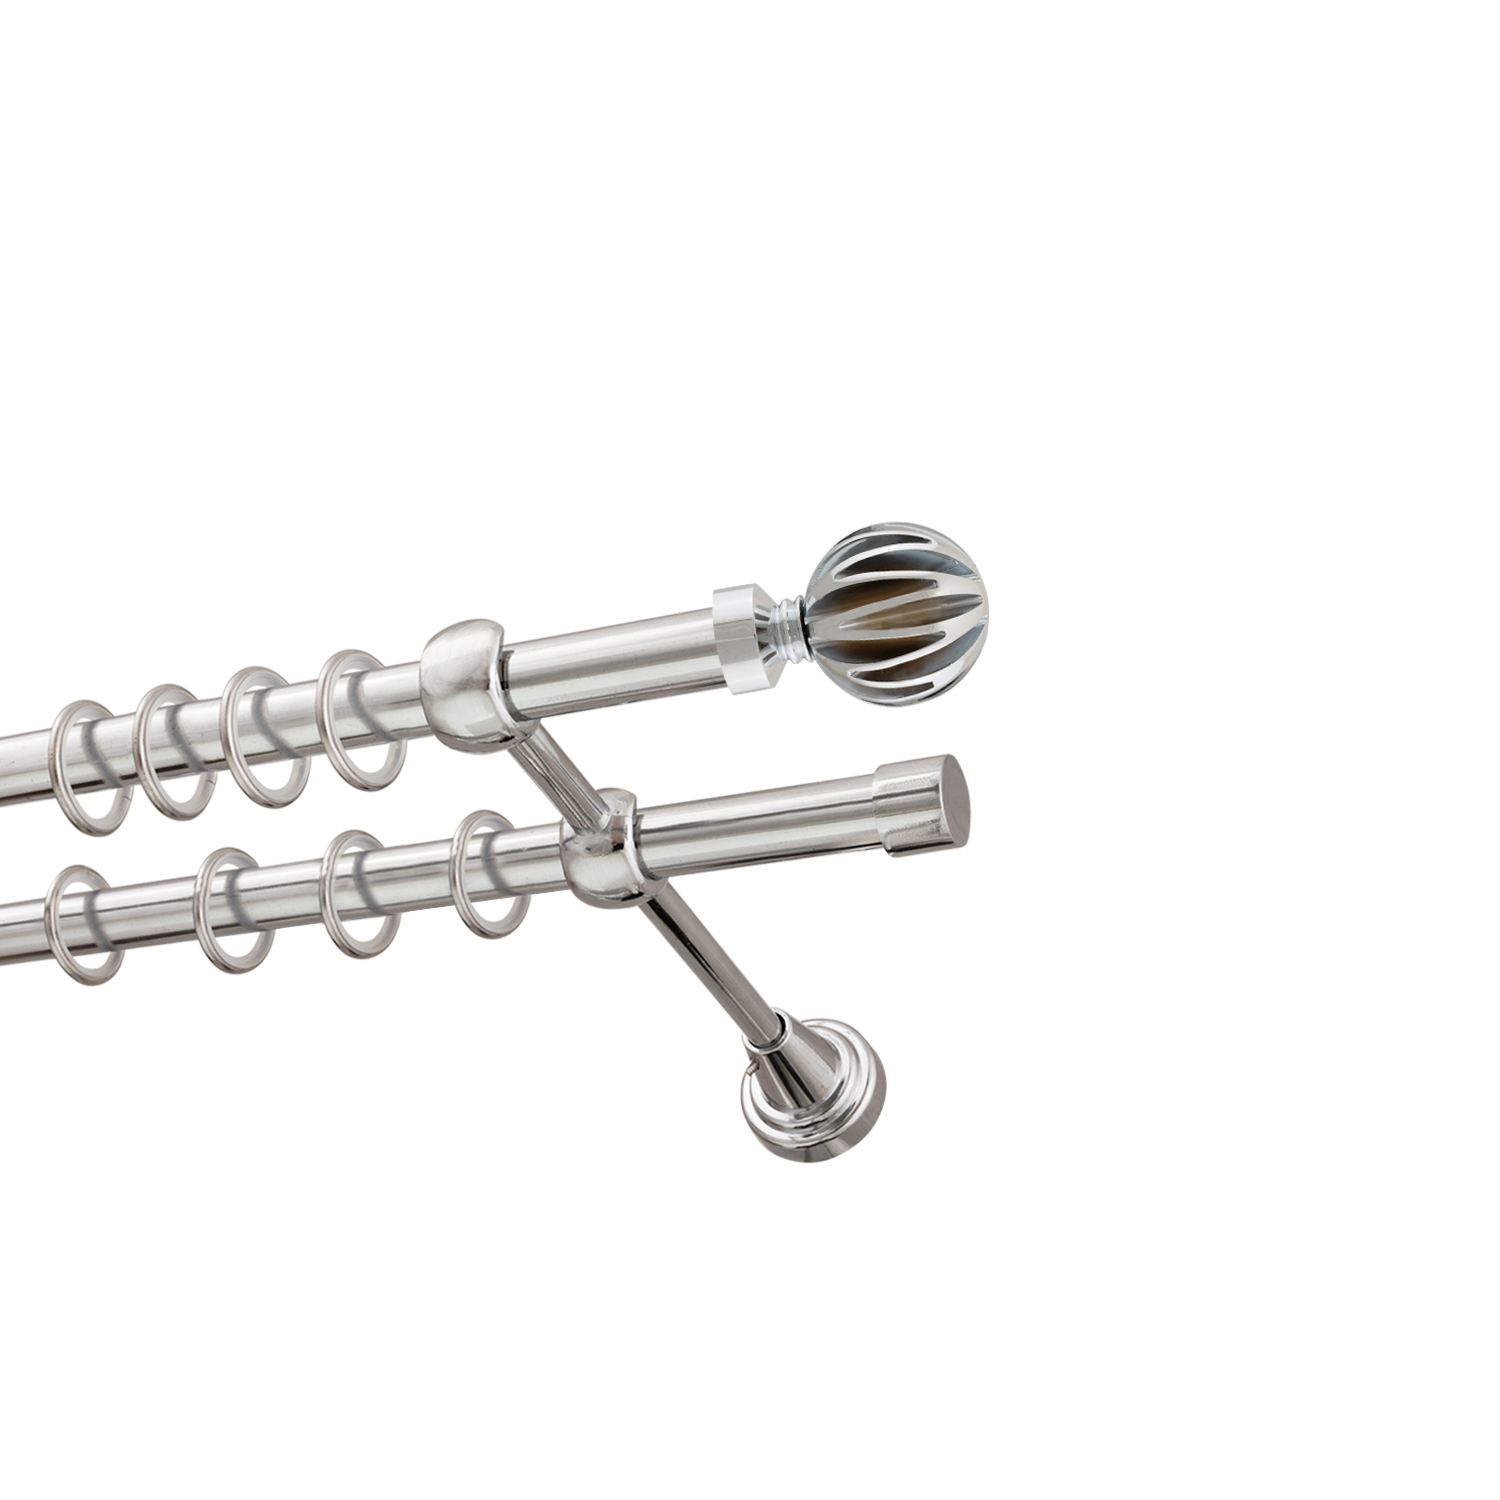 Металлический карниз для штор Шафран, двухрядный 16/16 мм, серебро, гладкая штанга, длина 180 см - фото Wikidecor.ru